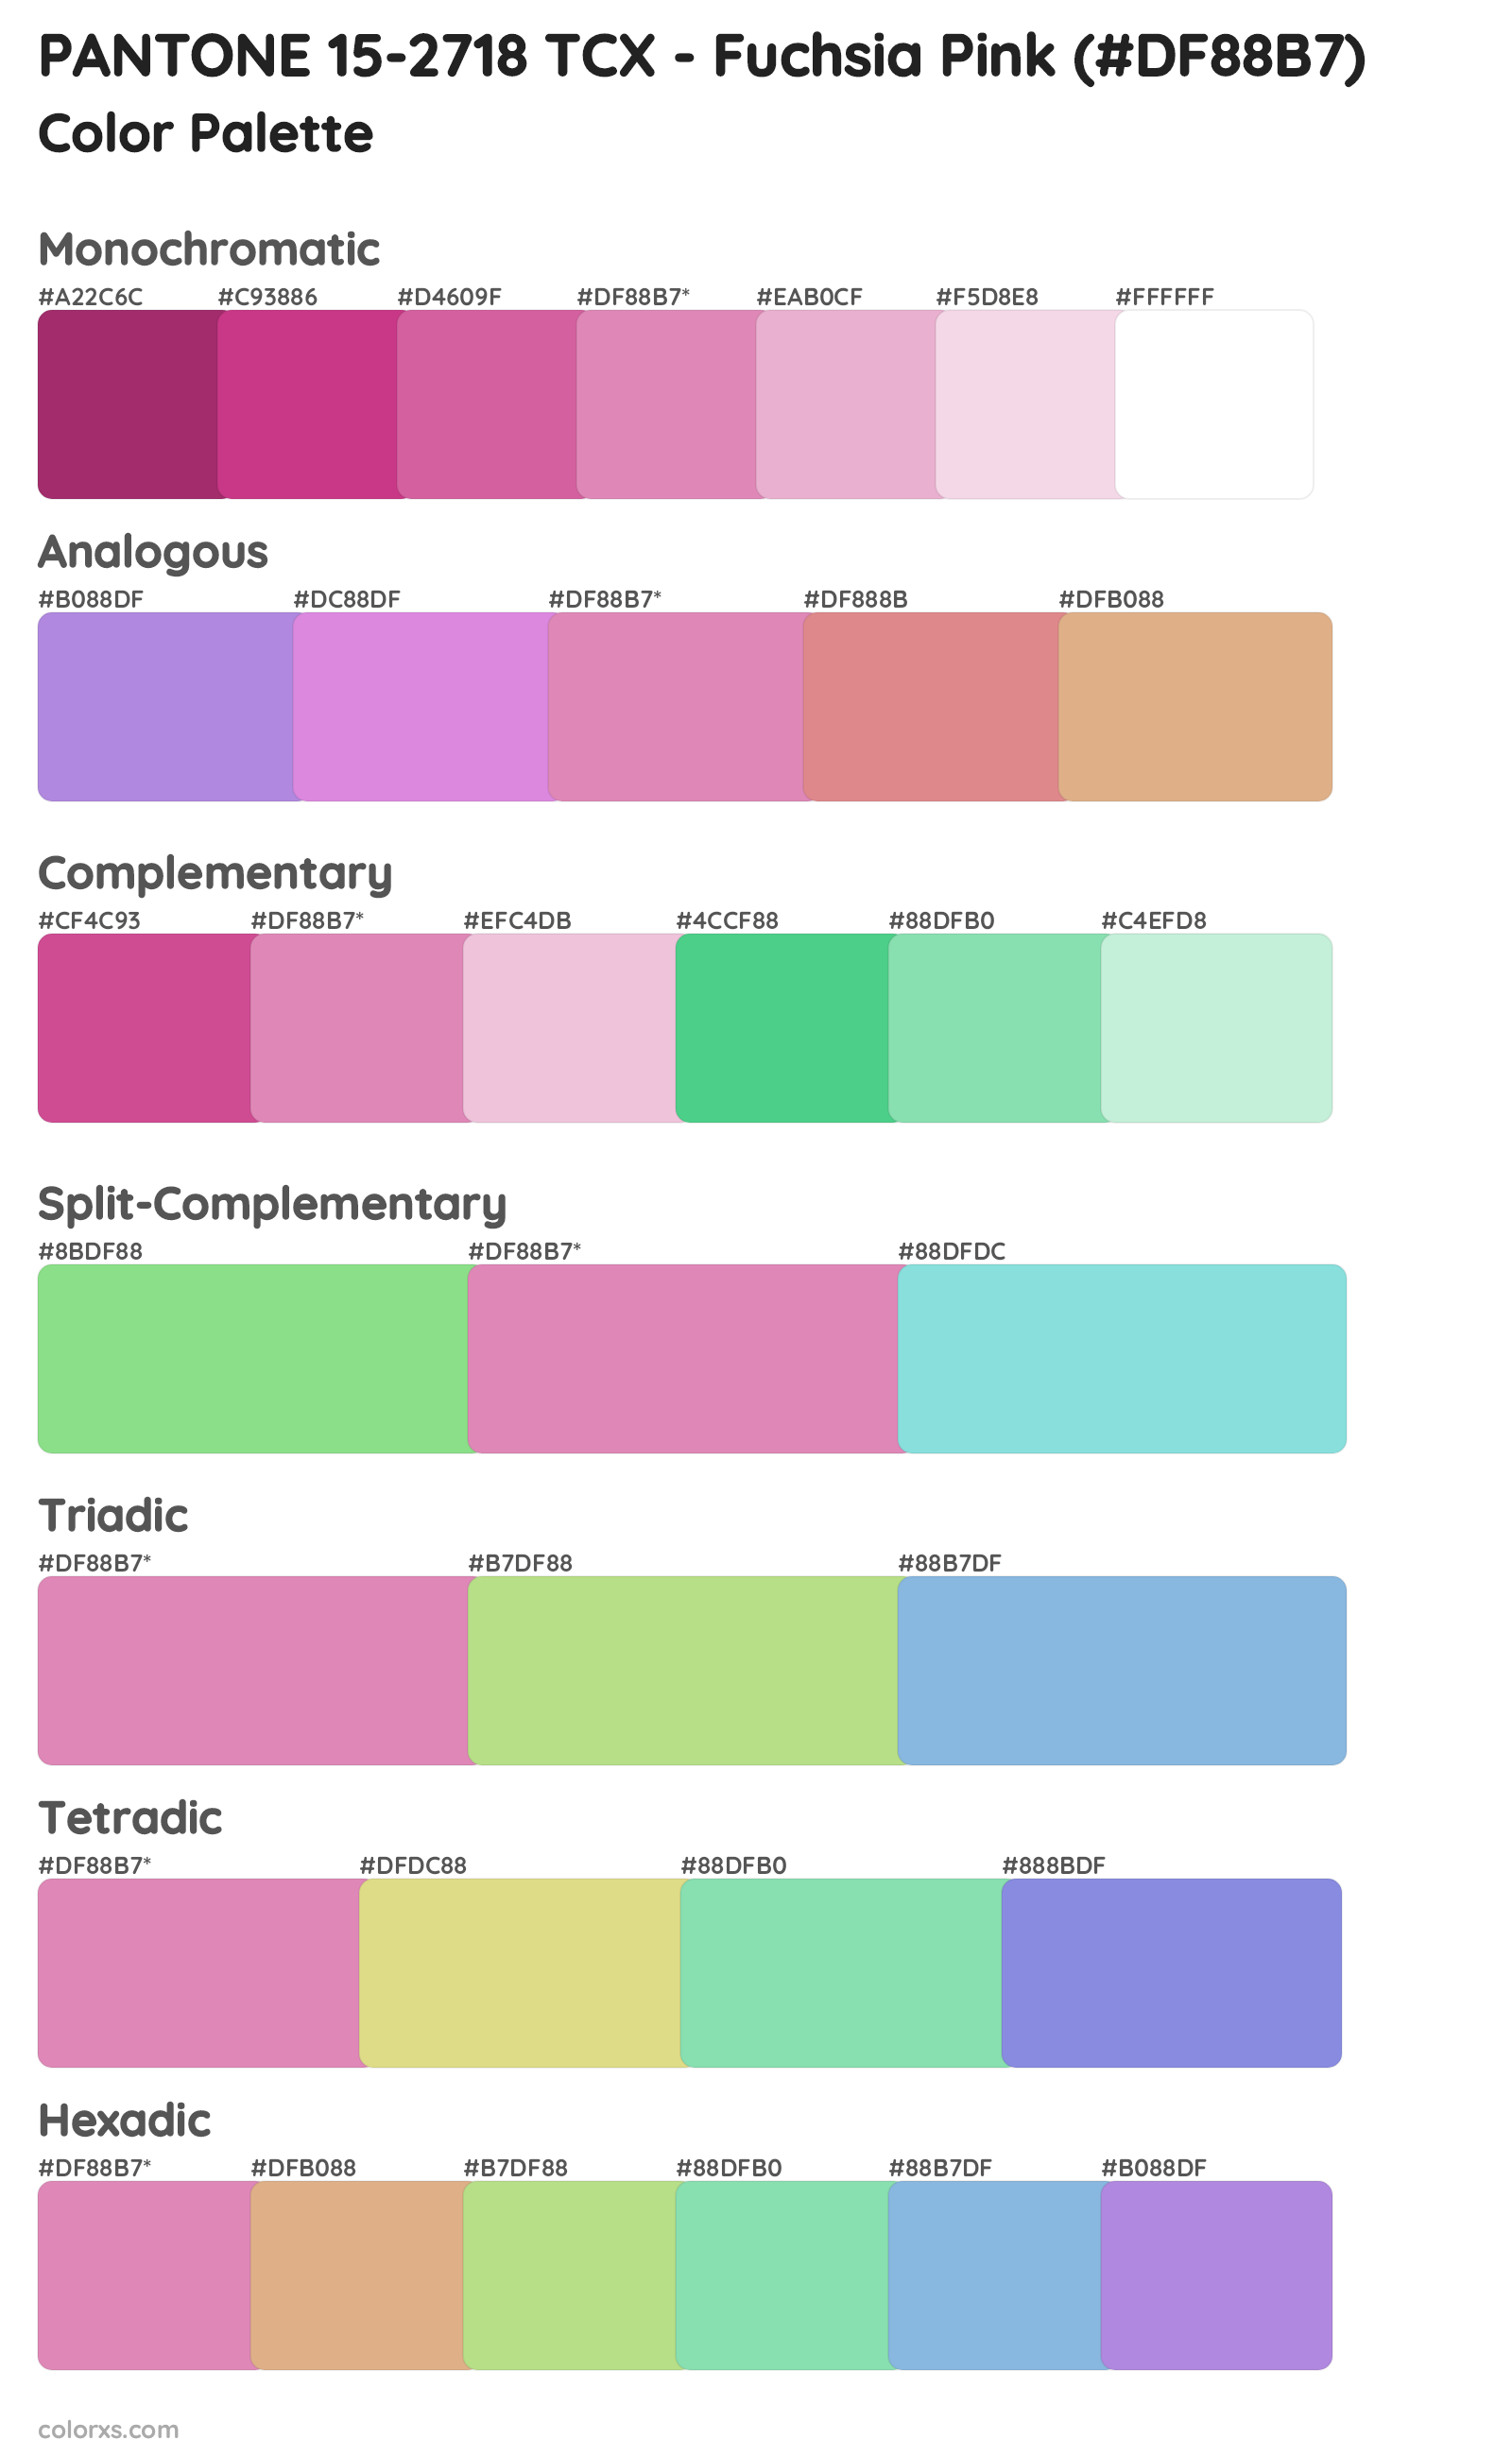 PANTONE 15-2718 TCX - Fuchsia Pink Color Scheme Palettes